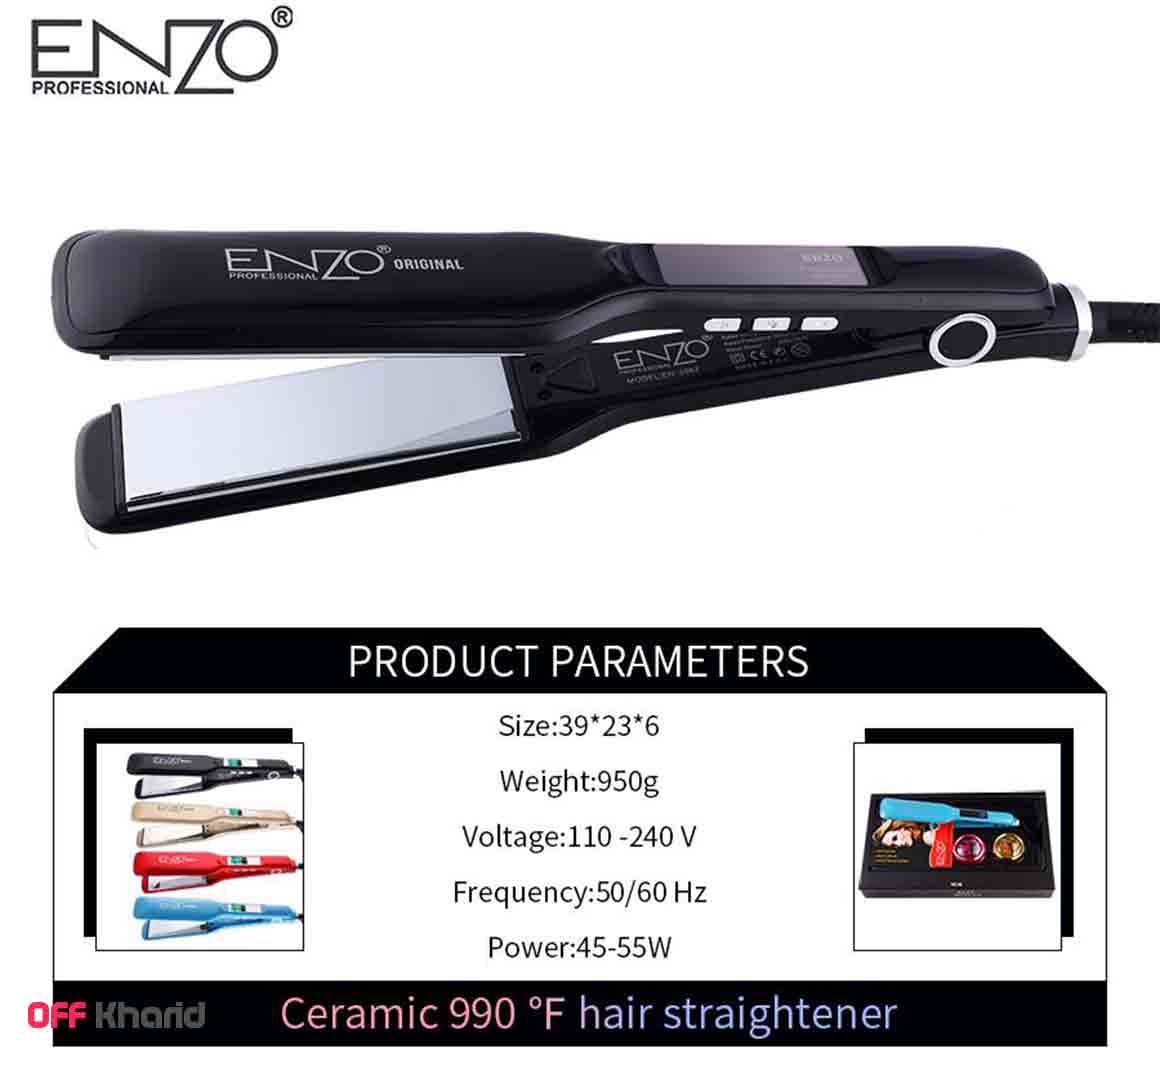 اتو مو حرفه ای انزو مدل ENZO EN-3967